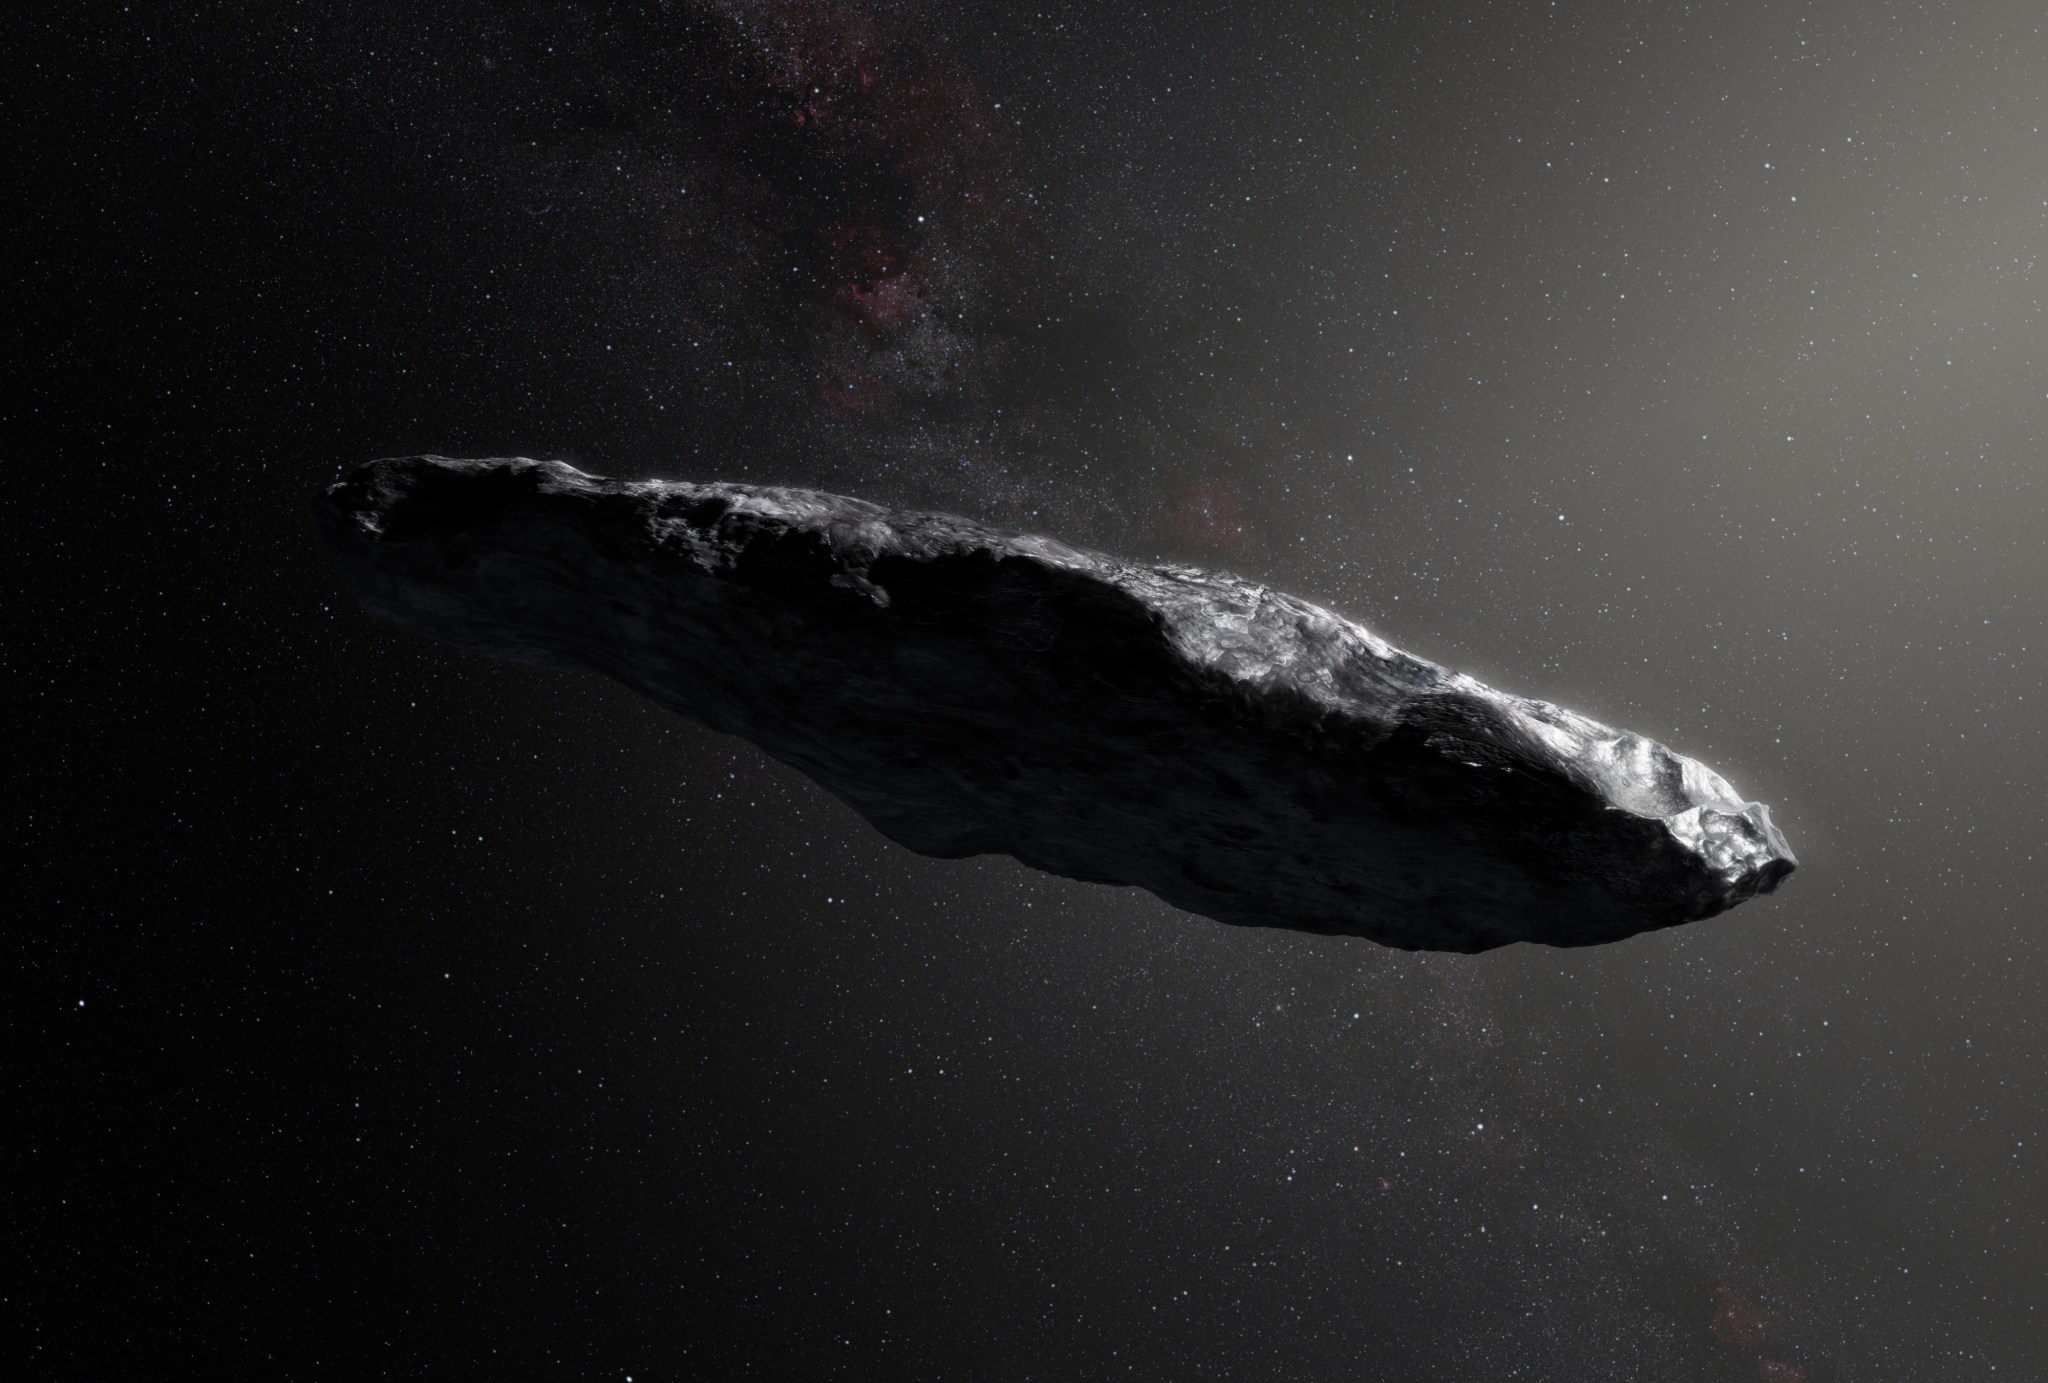 illustration of ‘Oumuamua